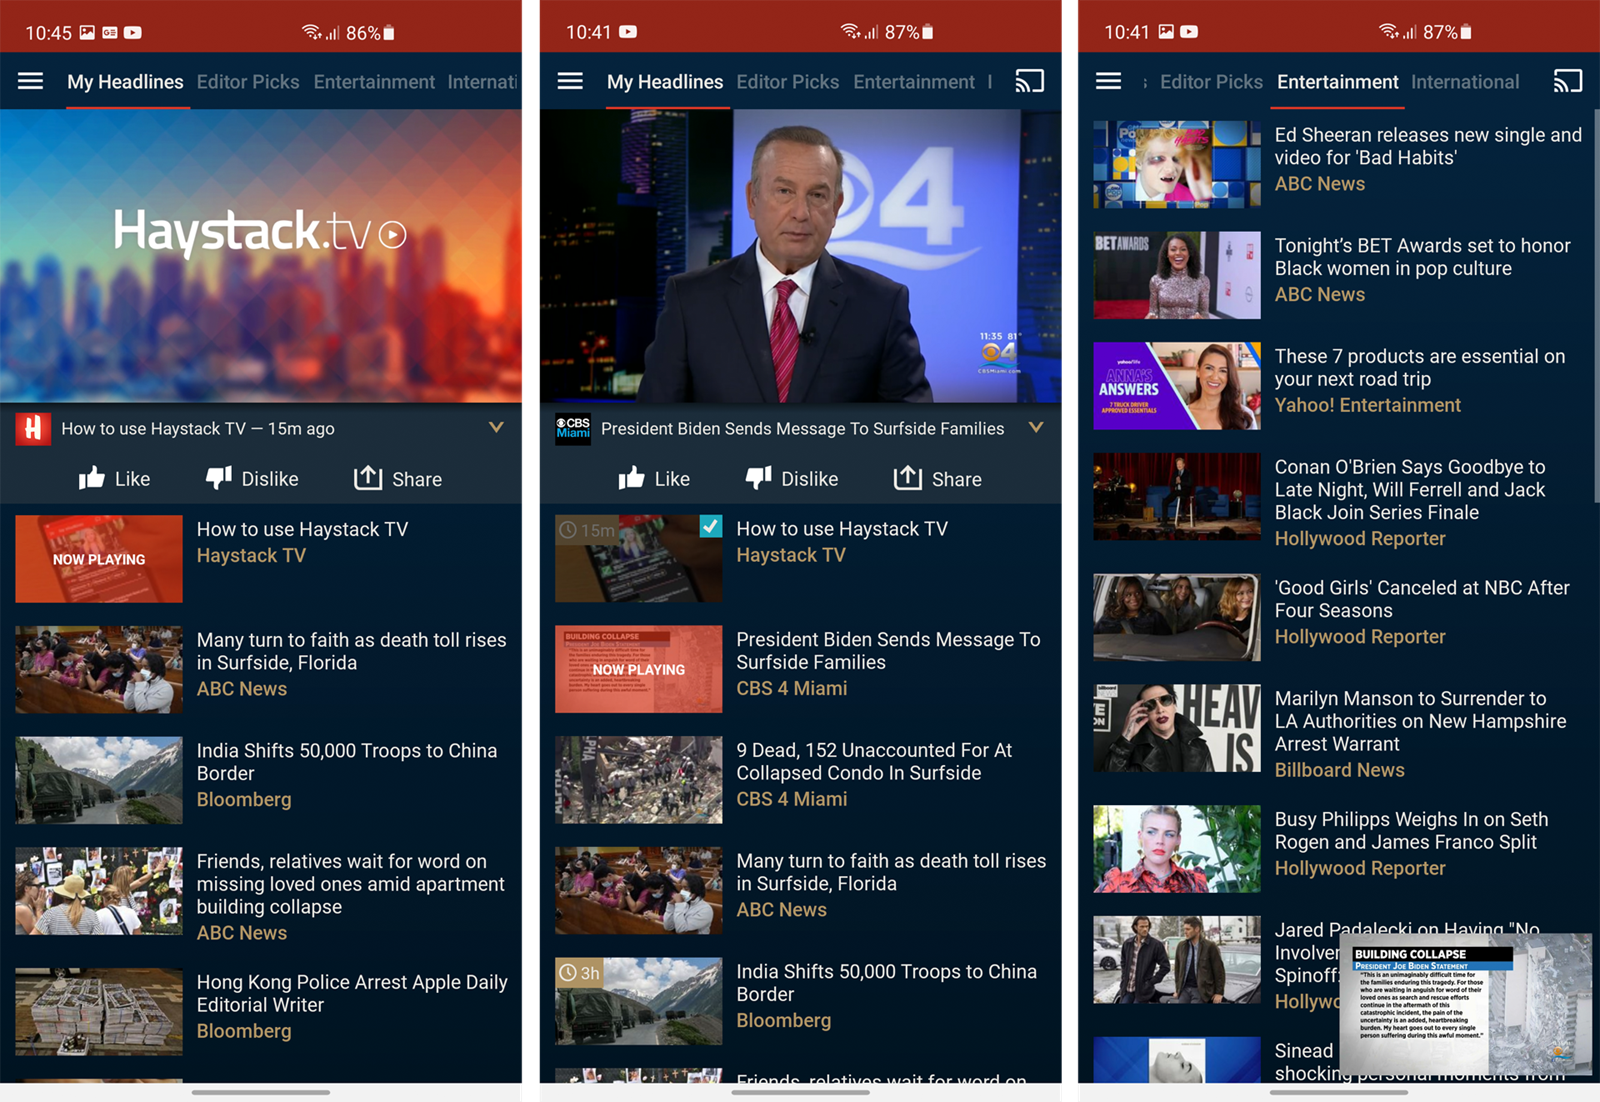 Haystack News - odlična aplikacija za gledanje TV novosti i ovisnike o  vijestima - App dana @ Bug.hr